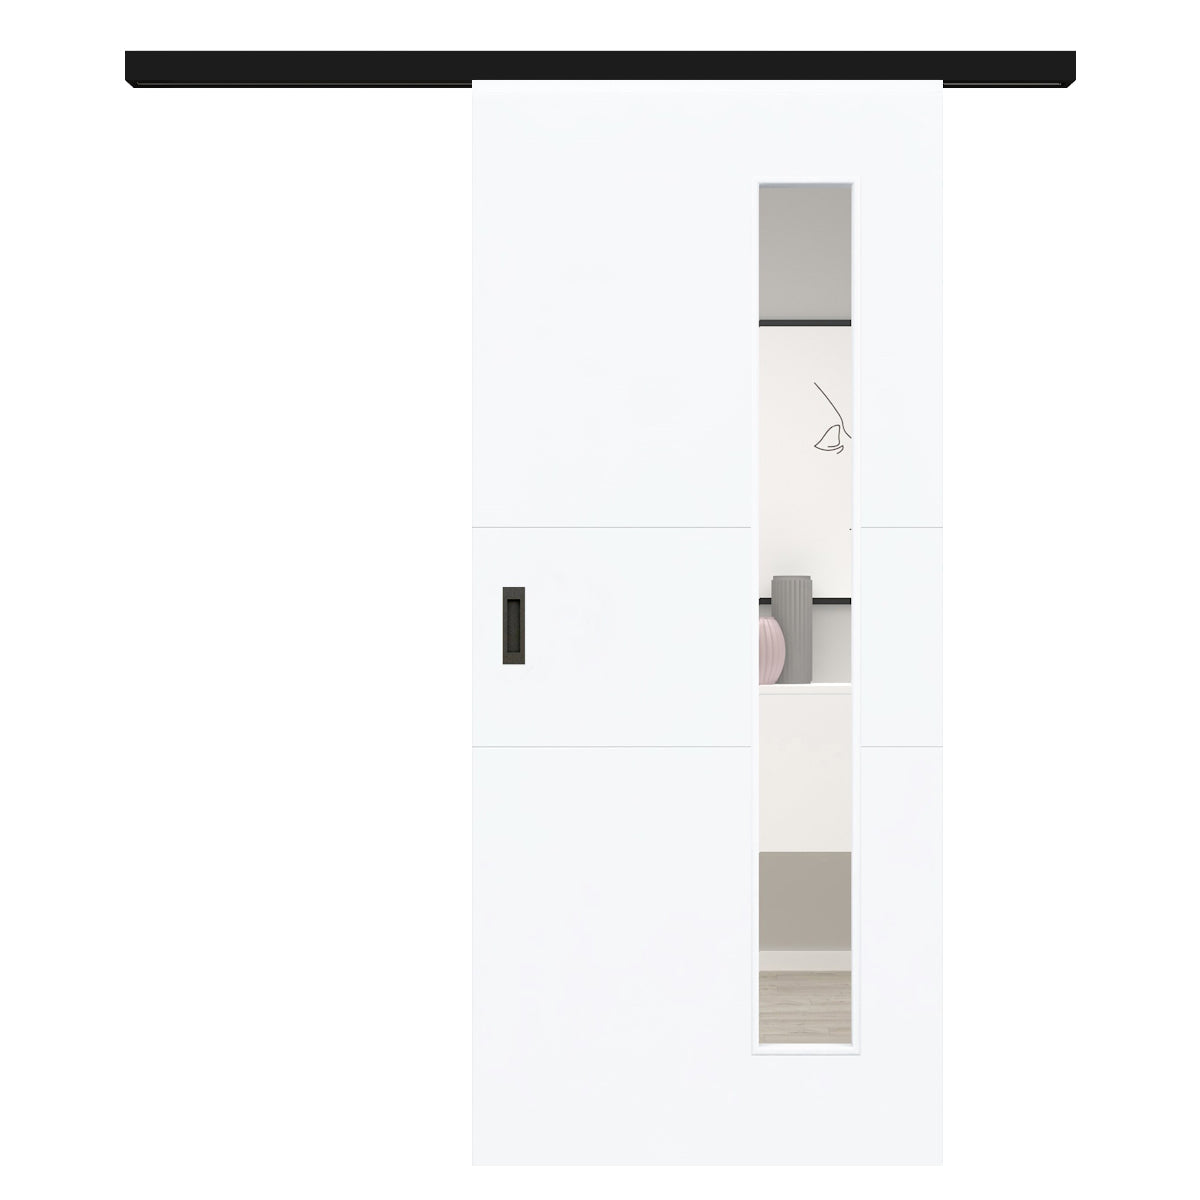 Schiebetür für Set mit schwarzem Laufkasten mit Lichtausschnitt brillant-weiß 2 Rillen quer - Modell Designtür Q23LAB